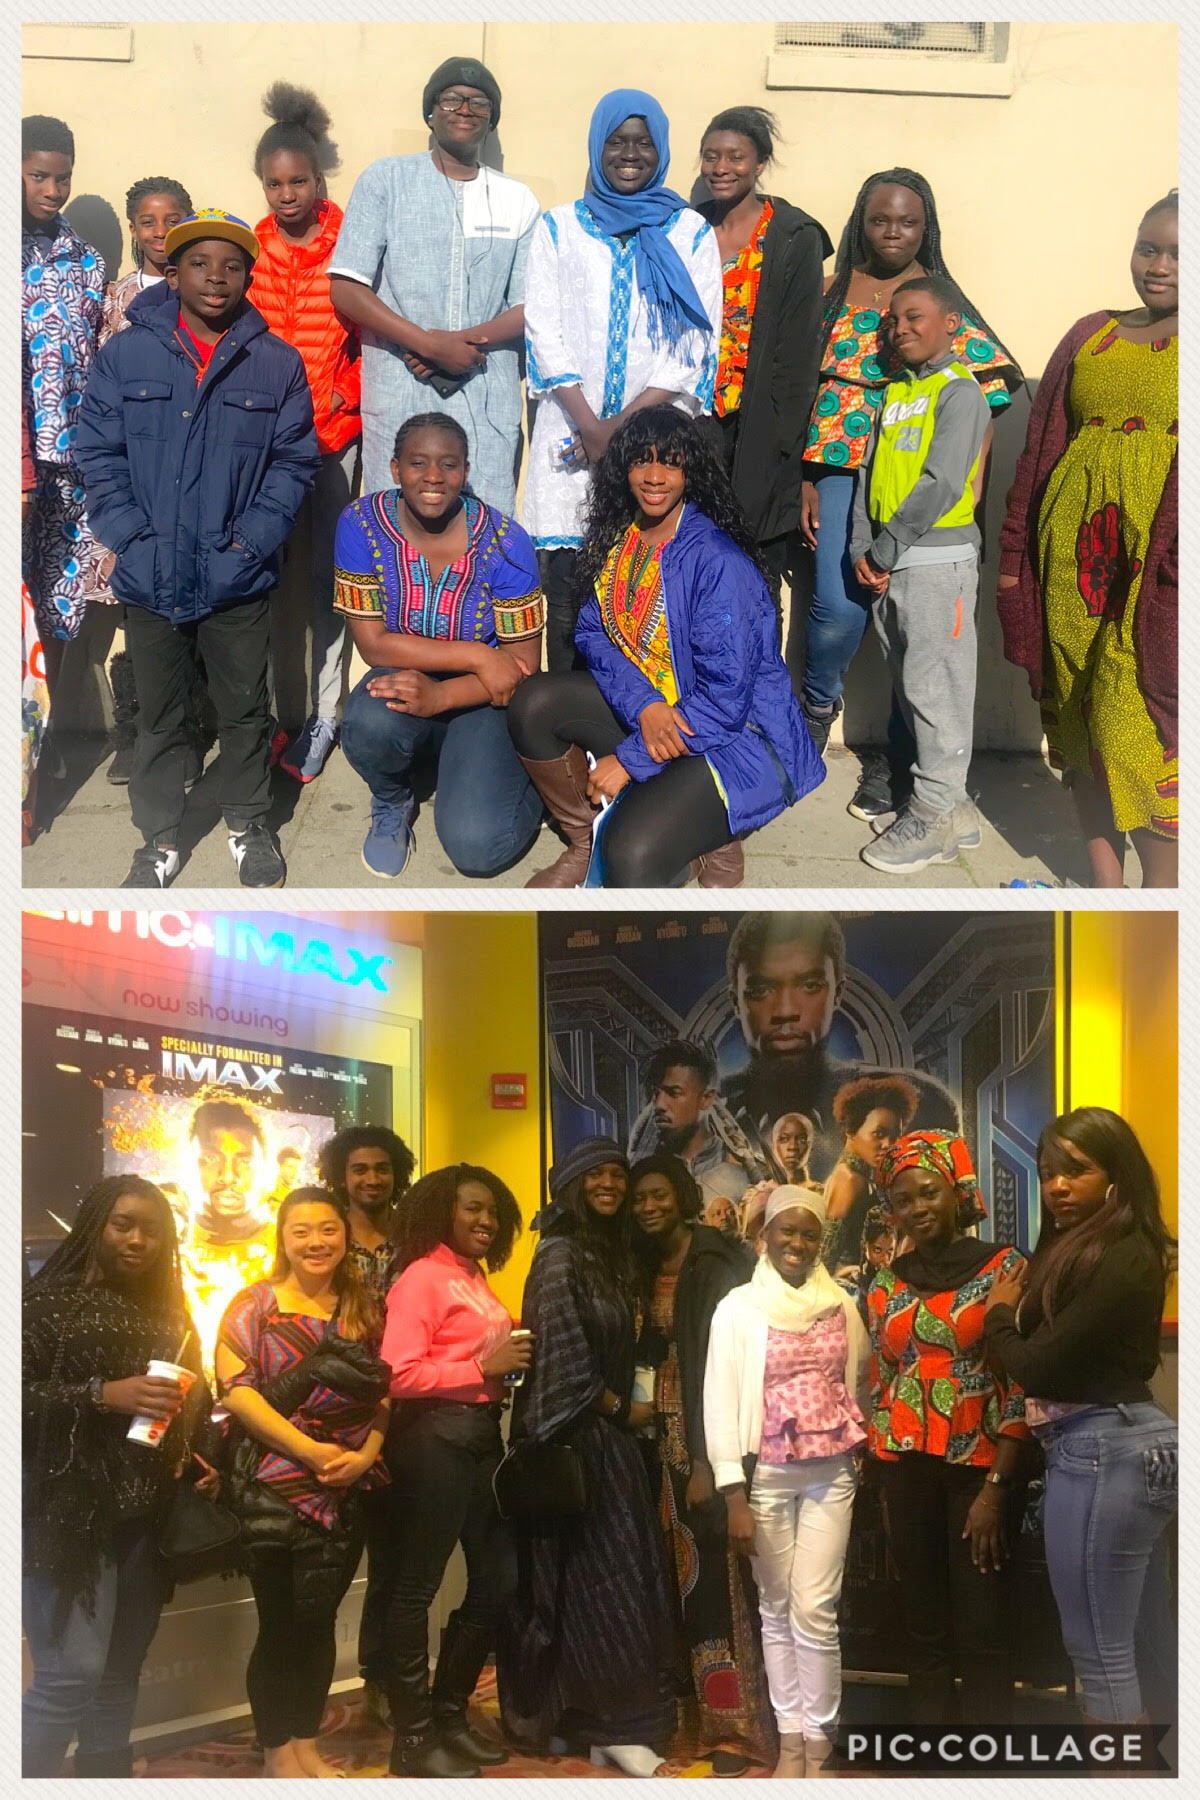  We went to WAKANDA, Black Panther movie screening February 2018 